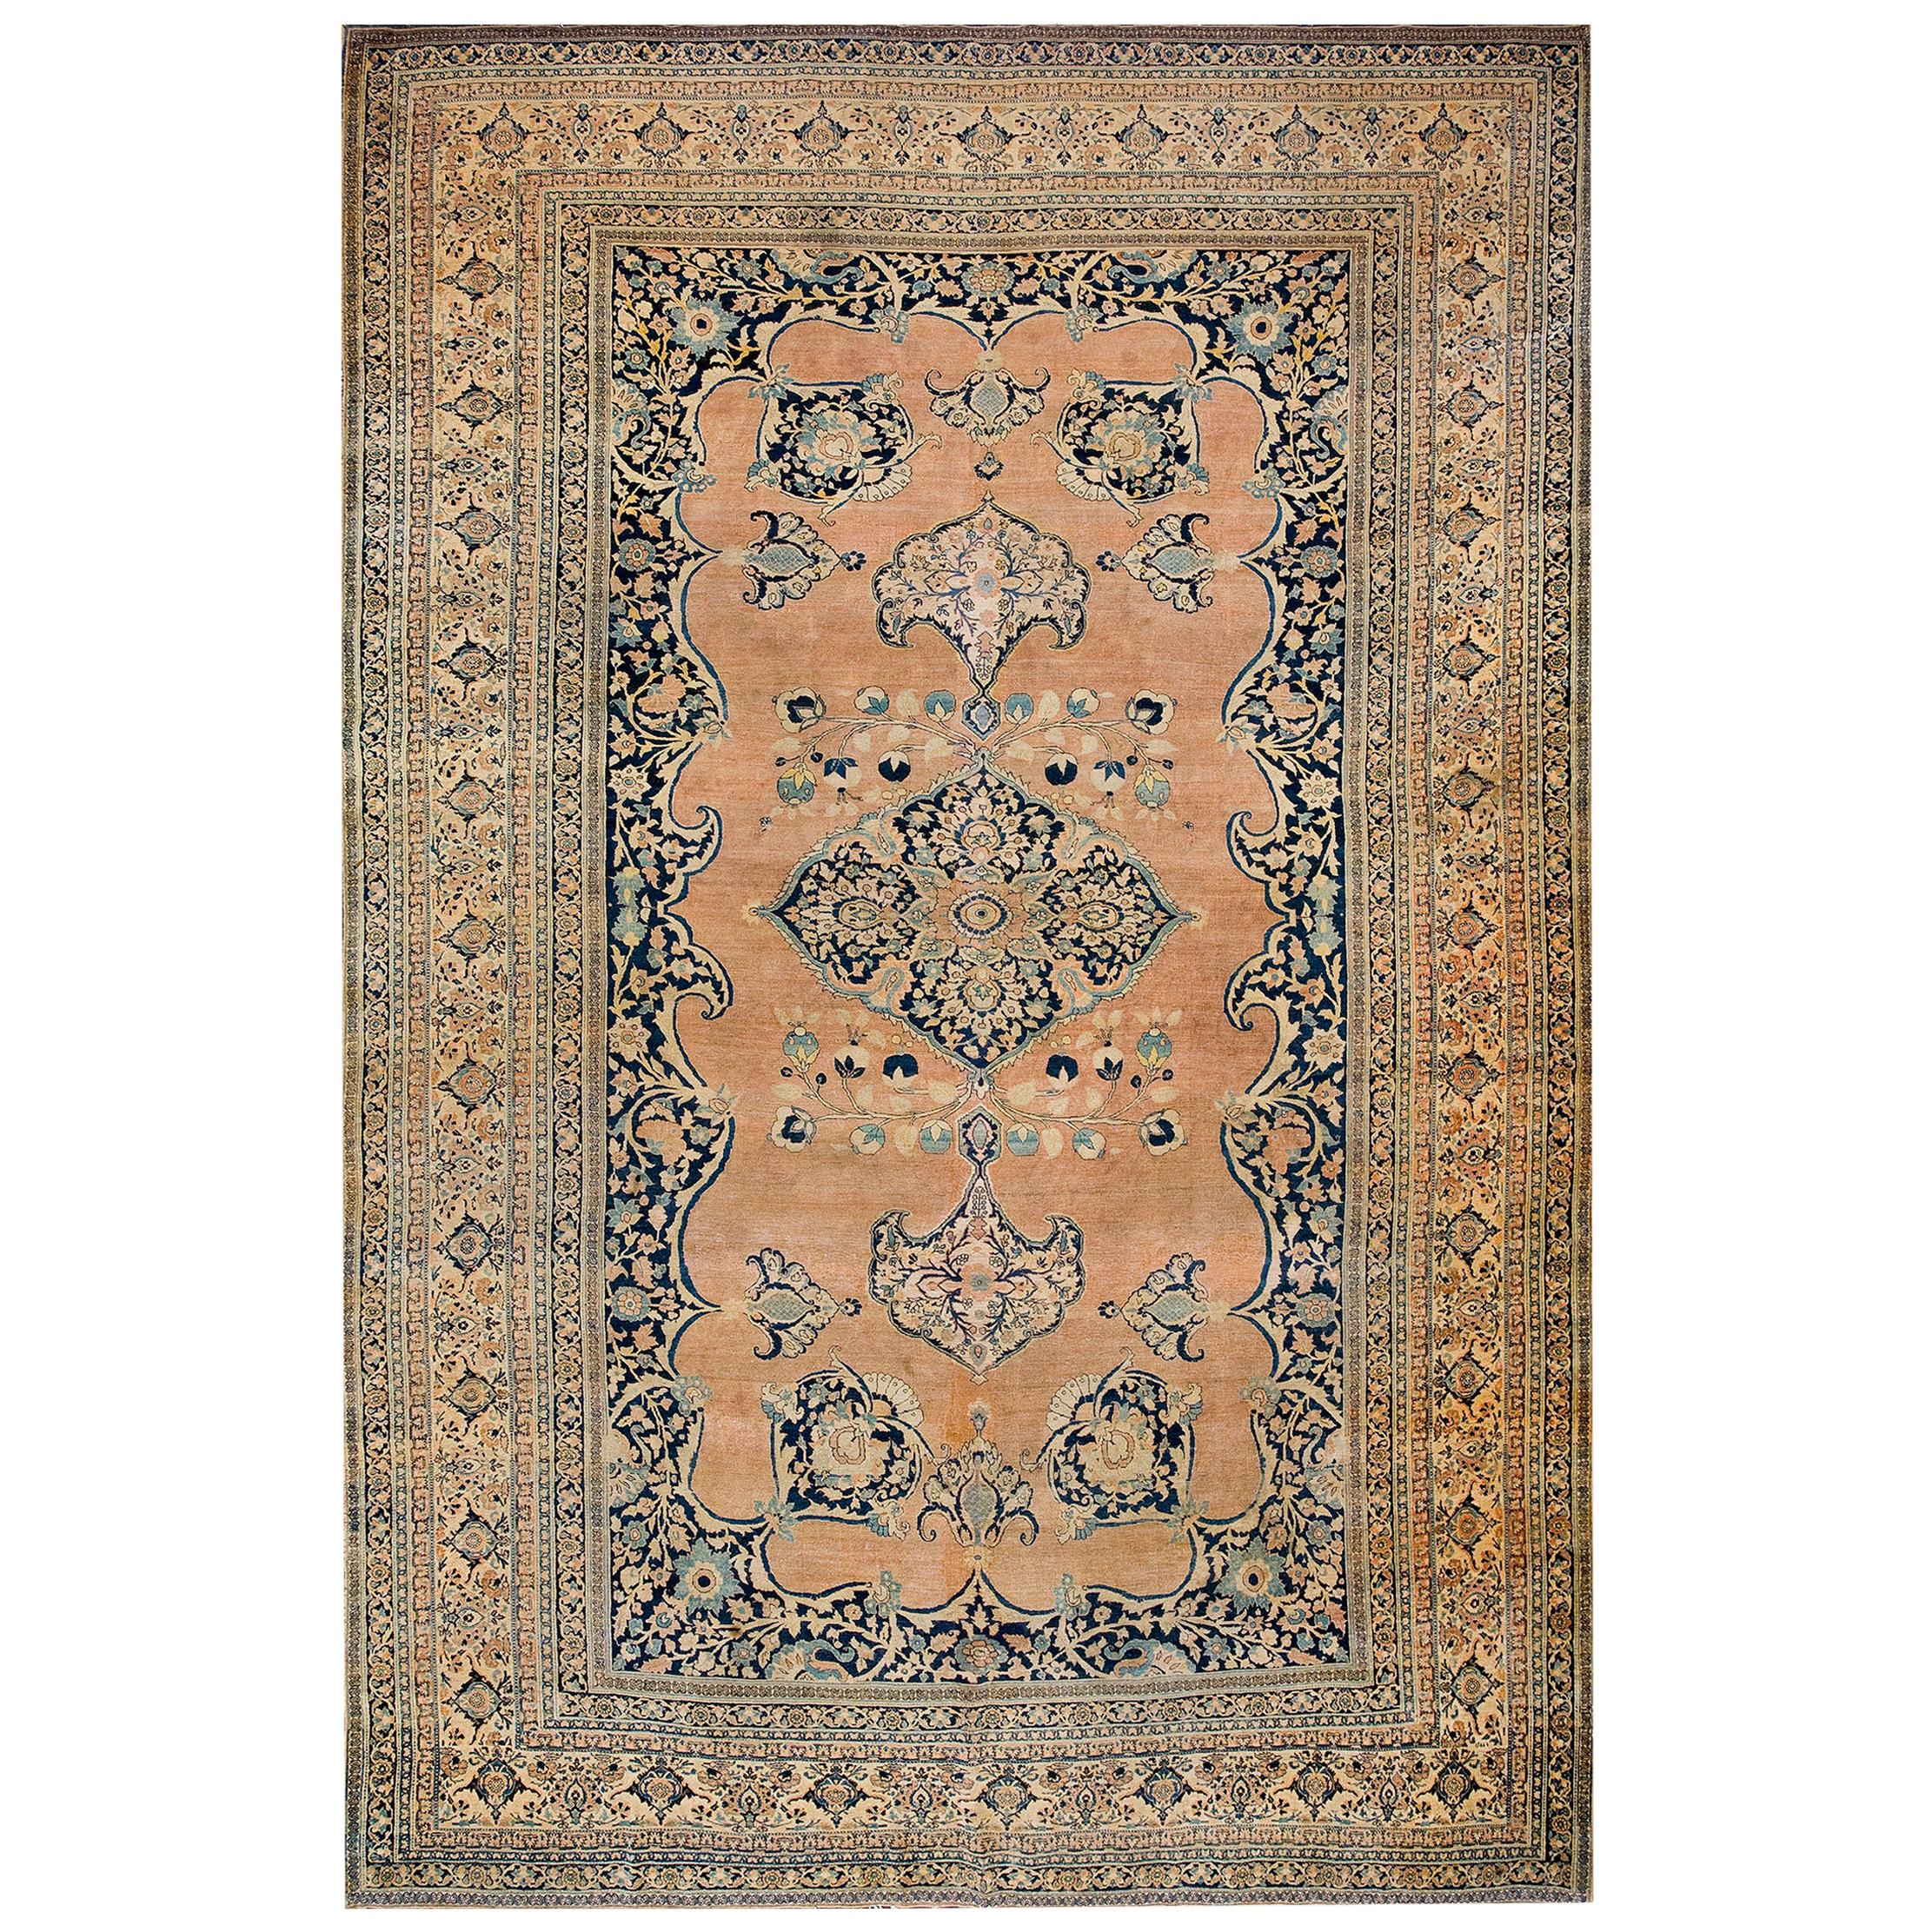 19th Century Persian Tabriz Haji Jalili Carpet ( 9'6" x 13'10" - 290 x 422 )